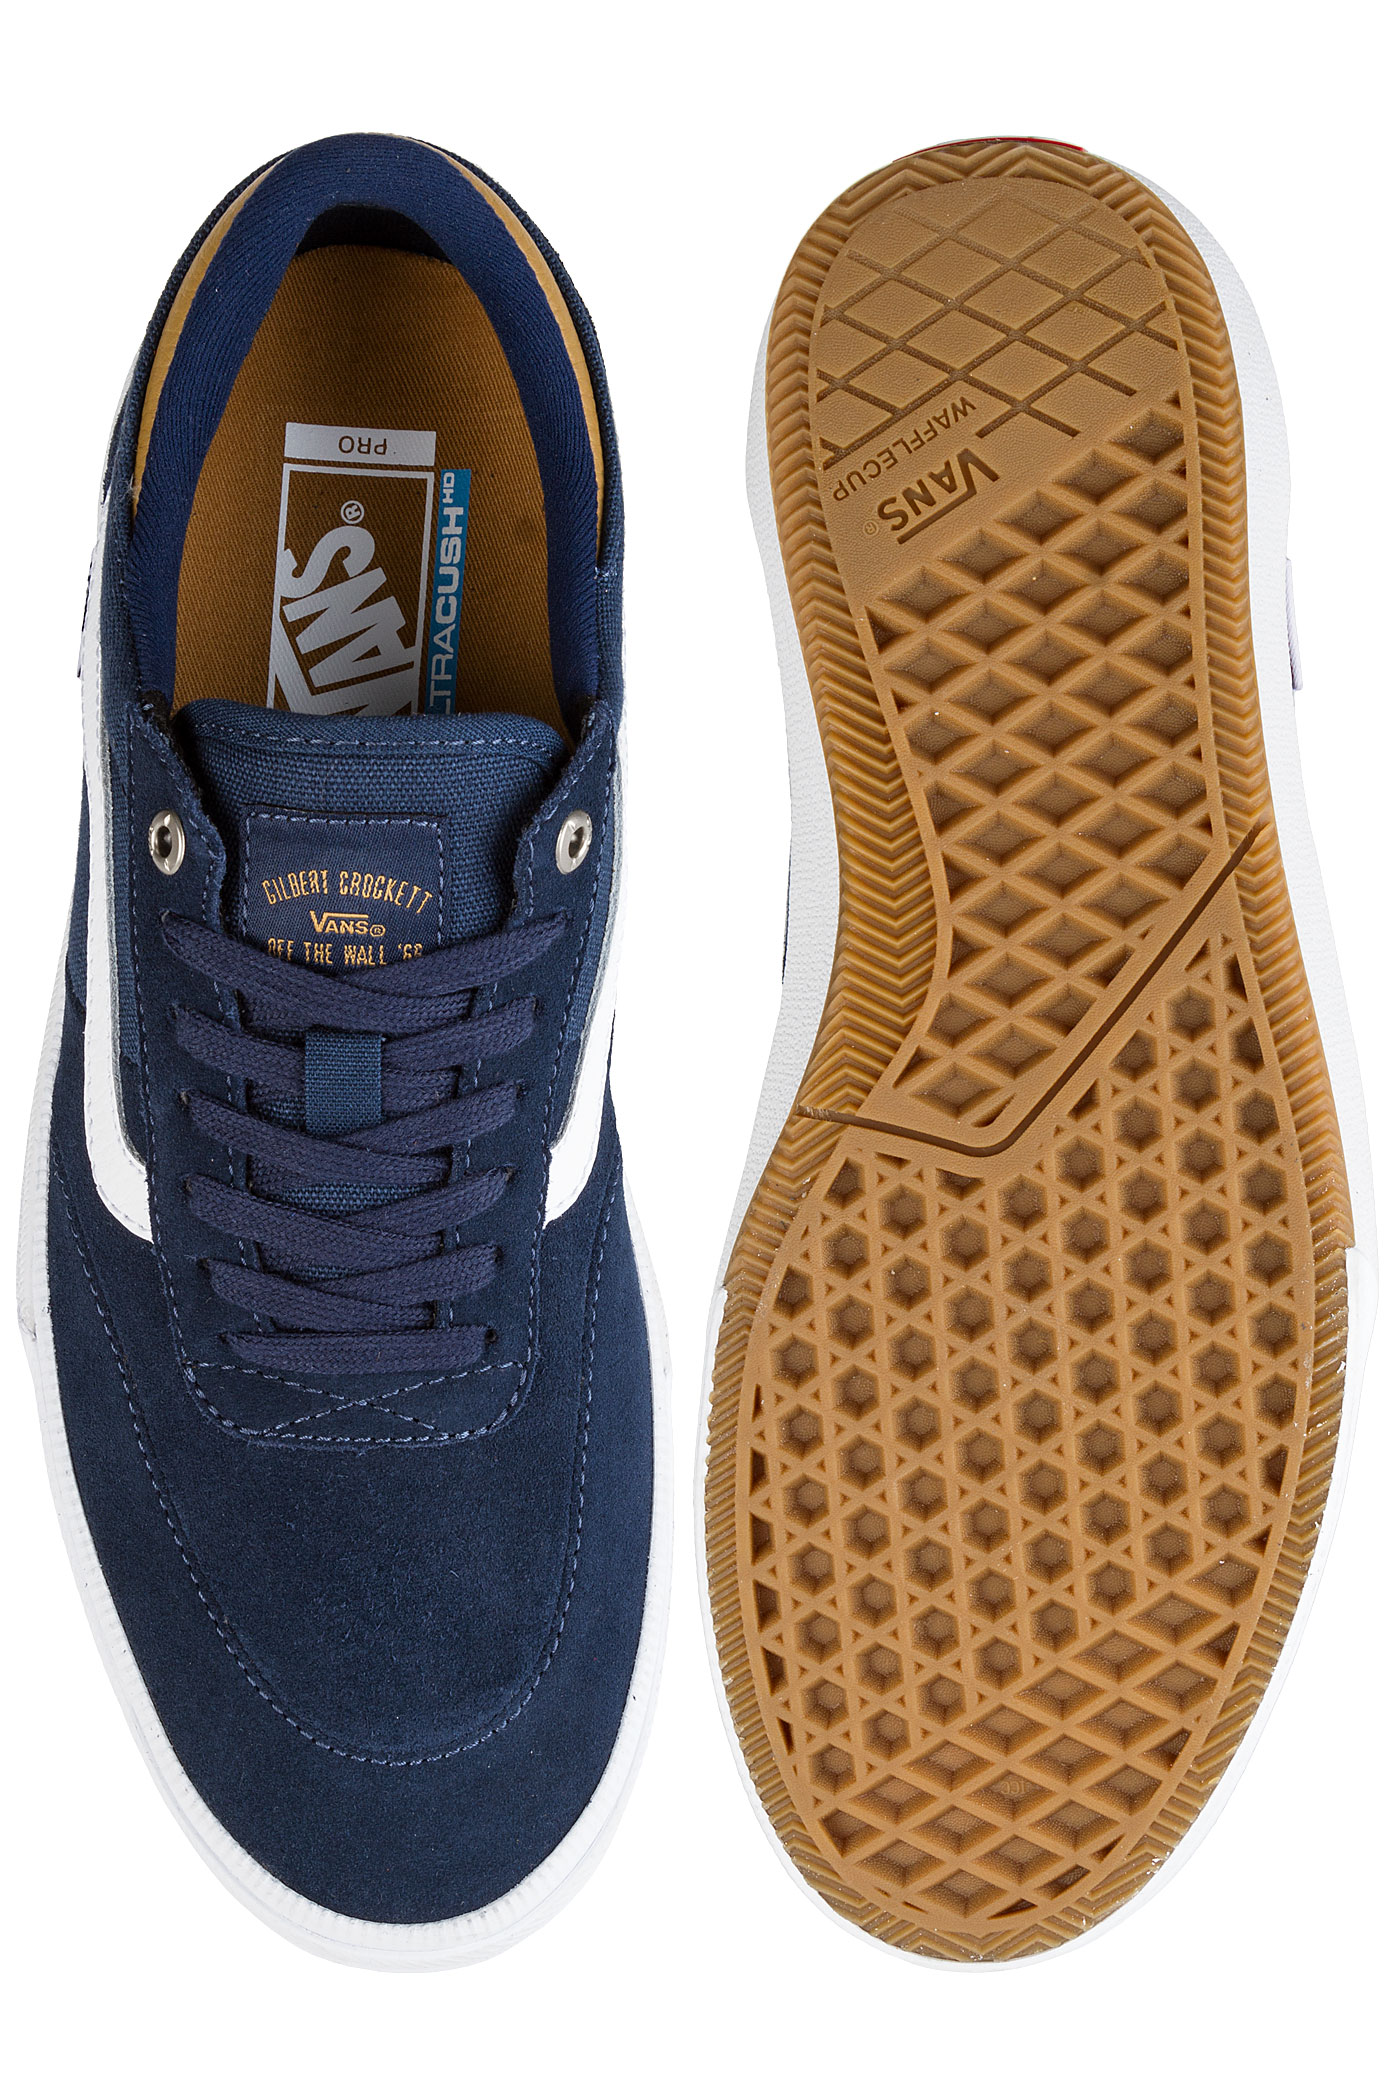 Vans Gilbert Crockett Pro 2 Shoes (dress blues medal bronze white) buy ...